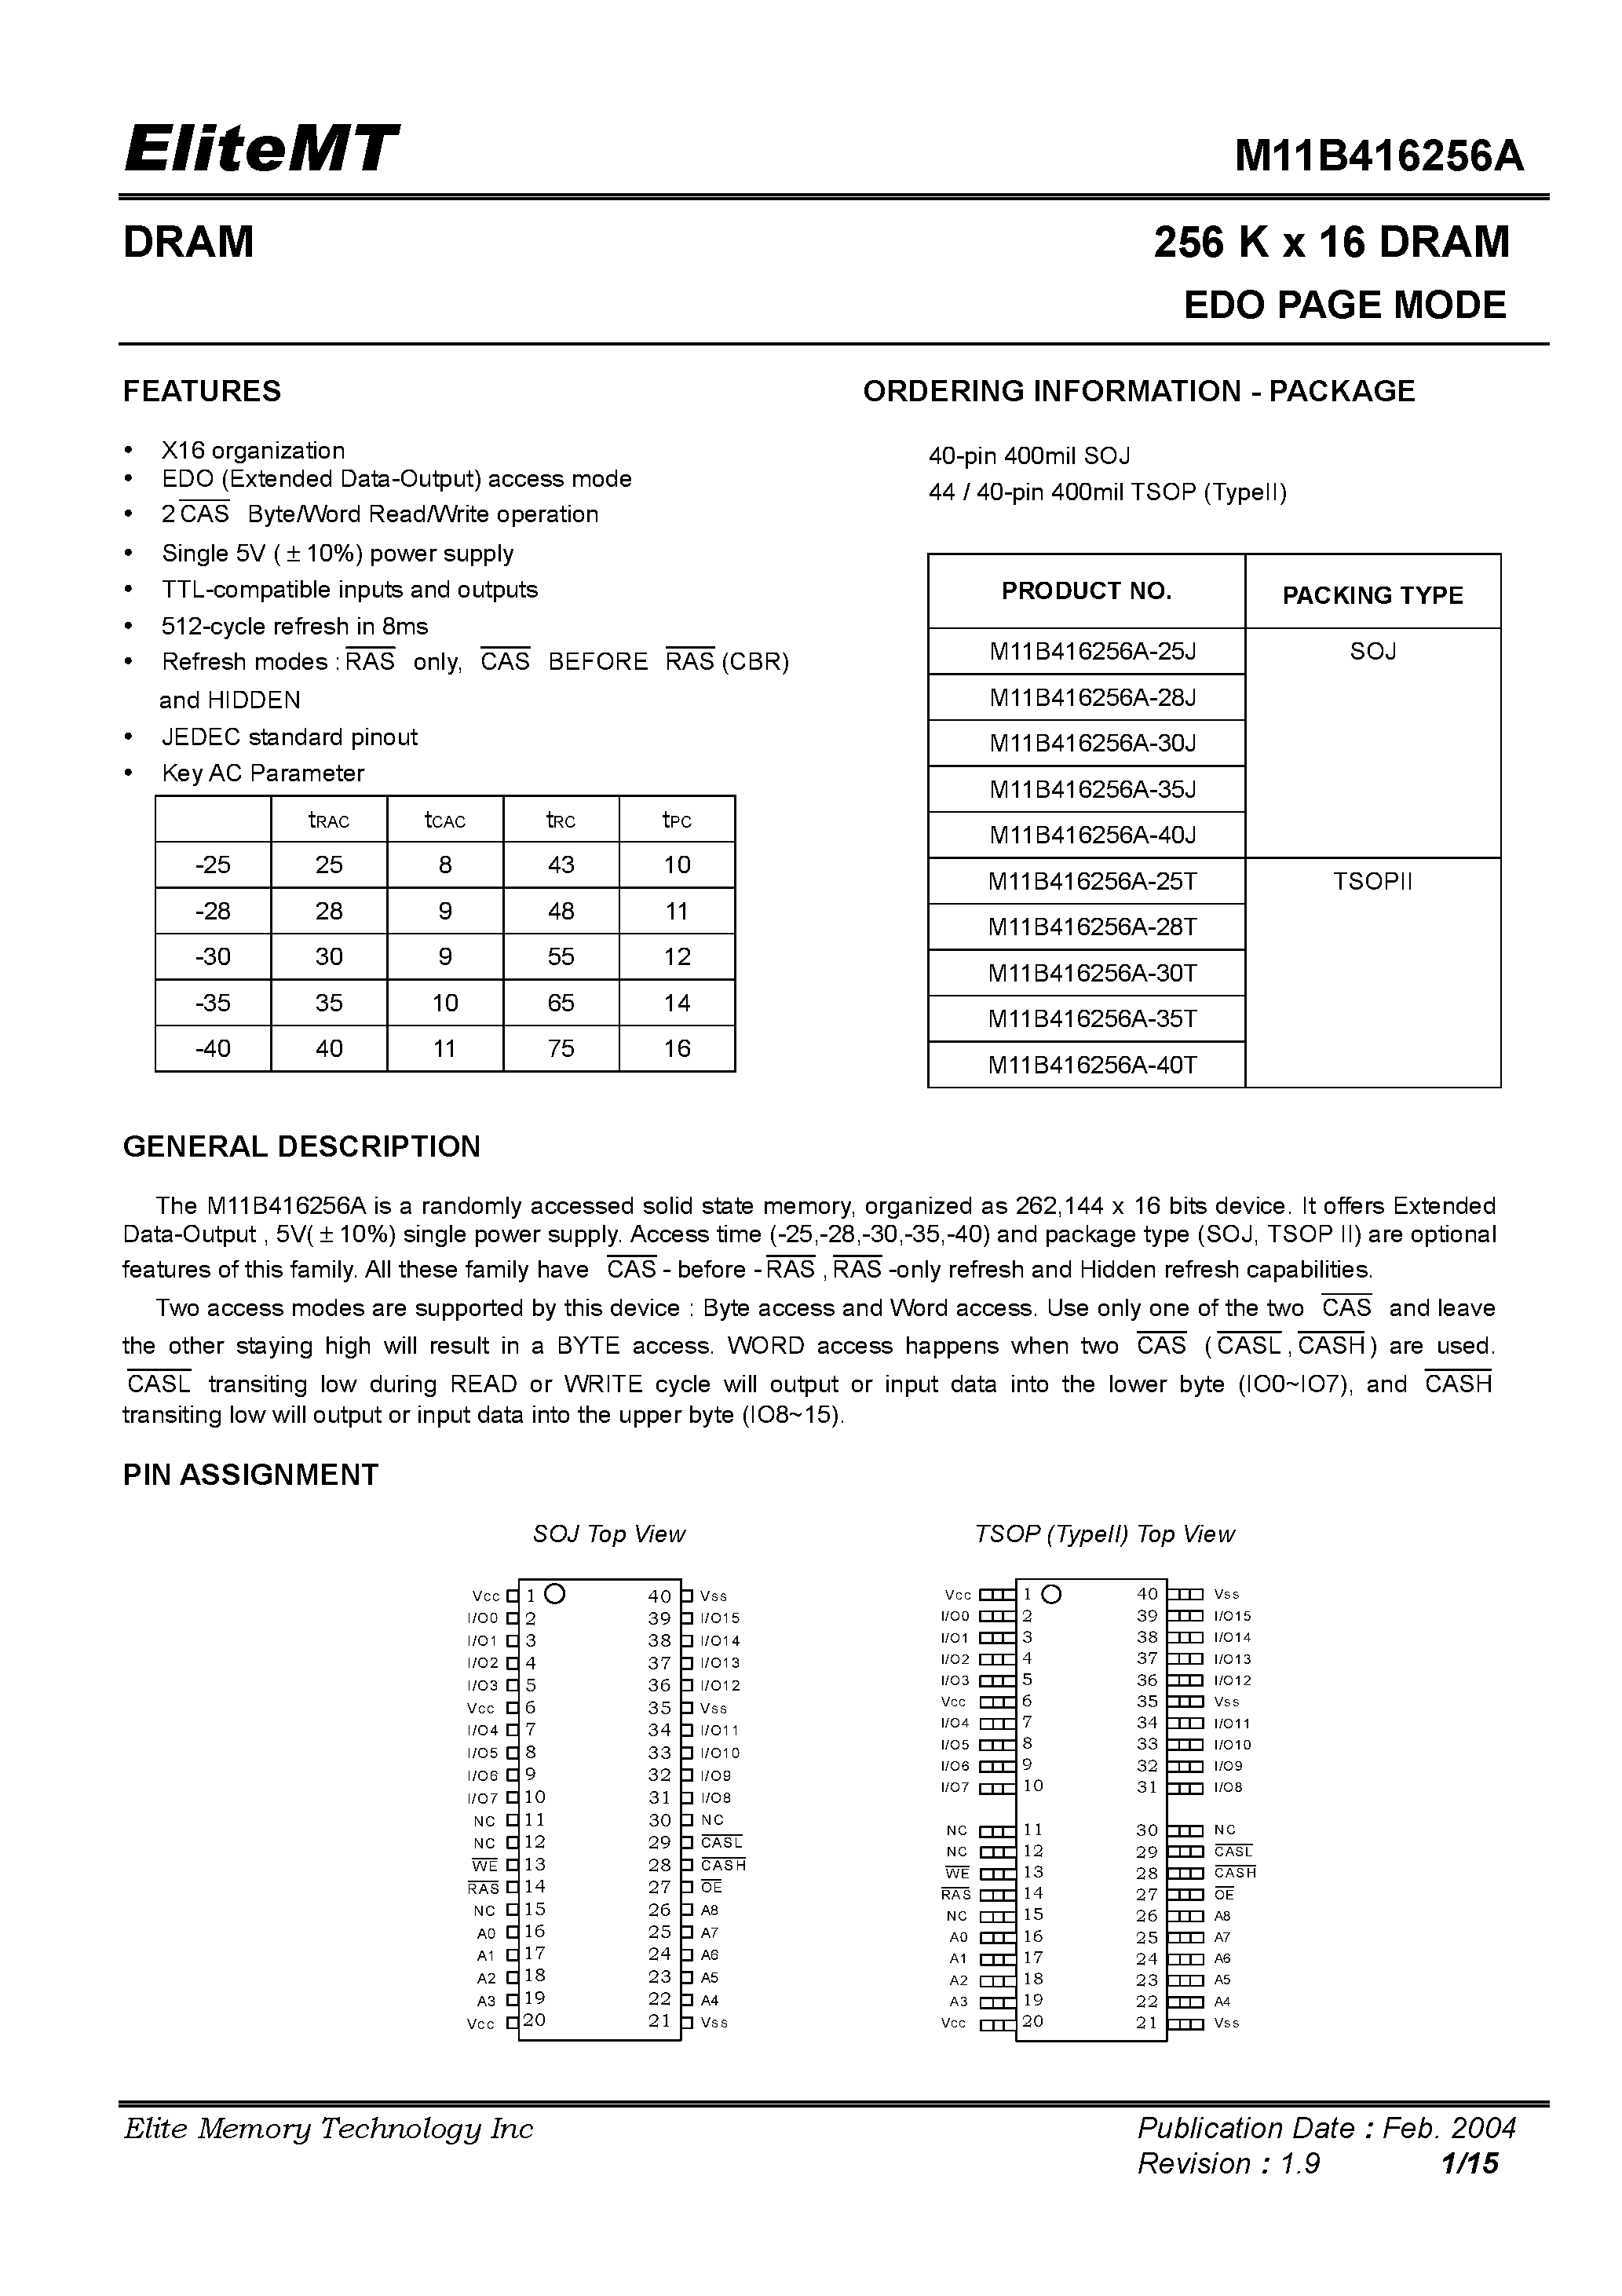 Datasheet M11B416256A-35J - 256 K x 16 DRAM EDO PAGE MODE page 1